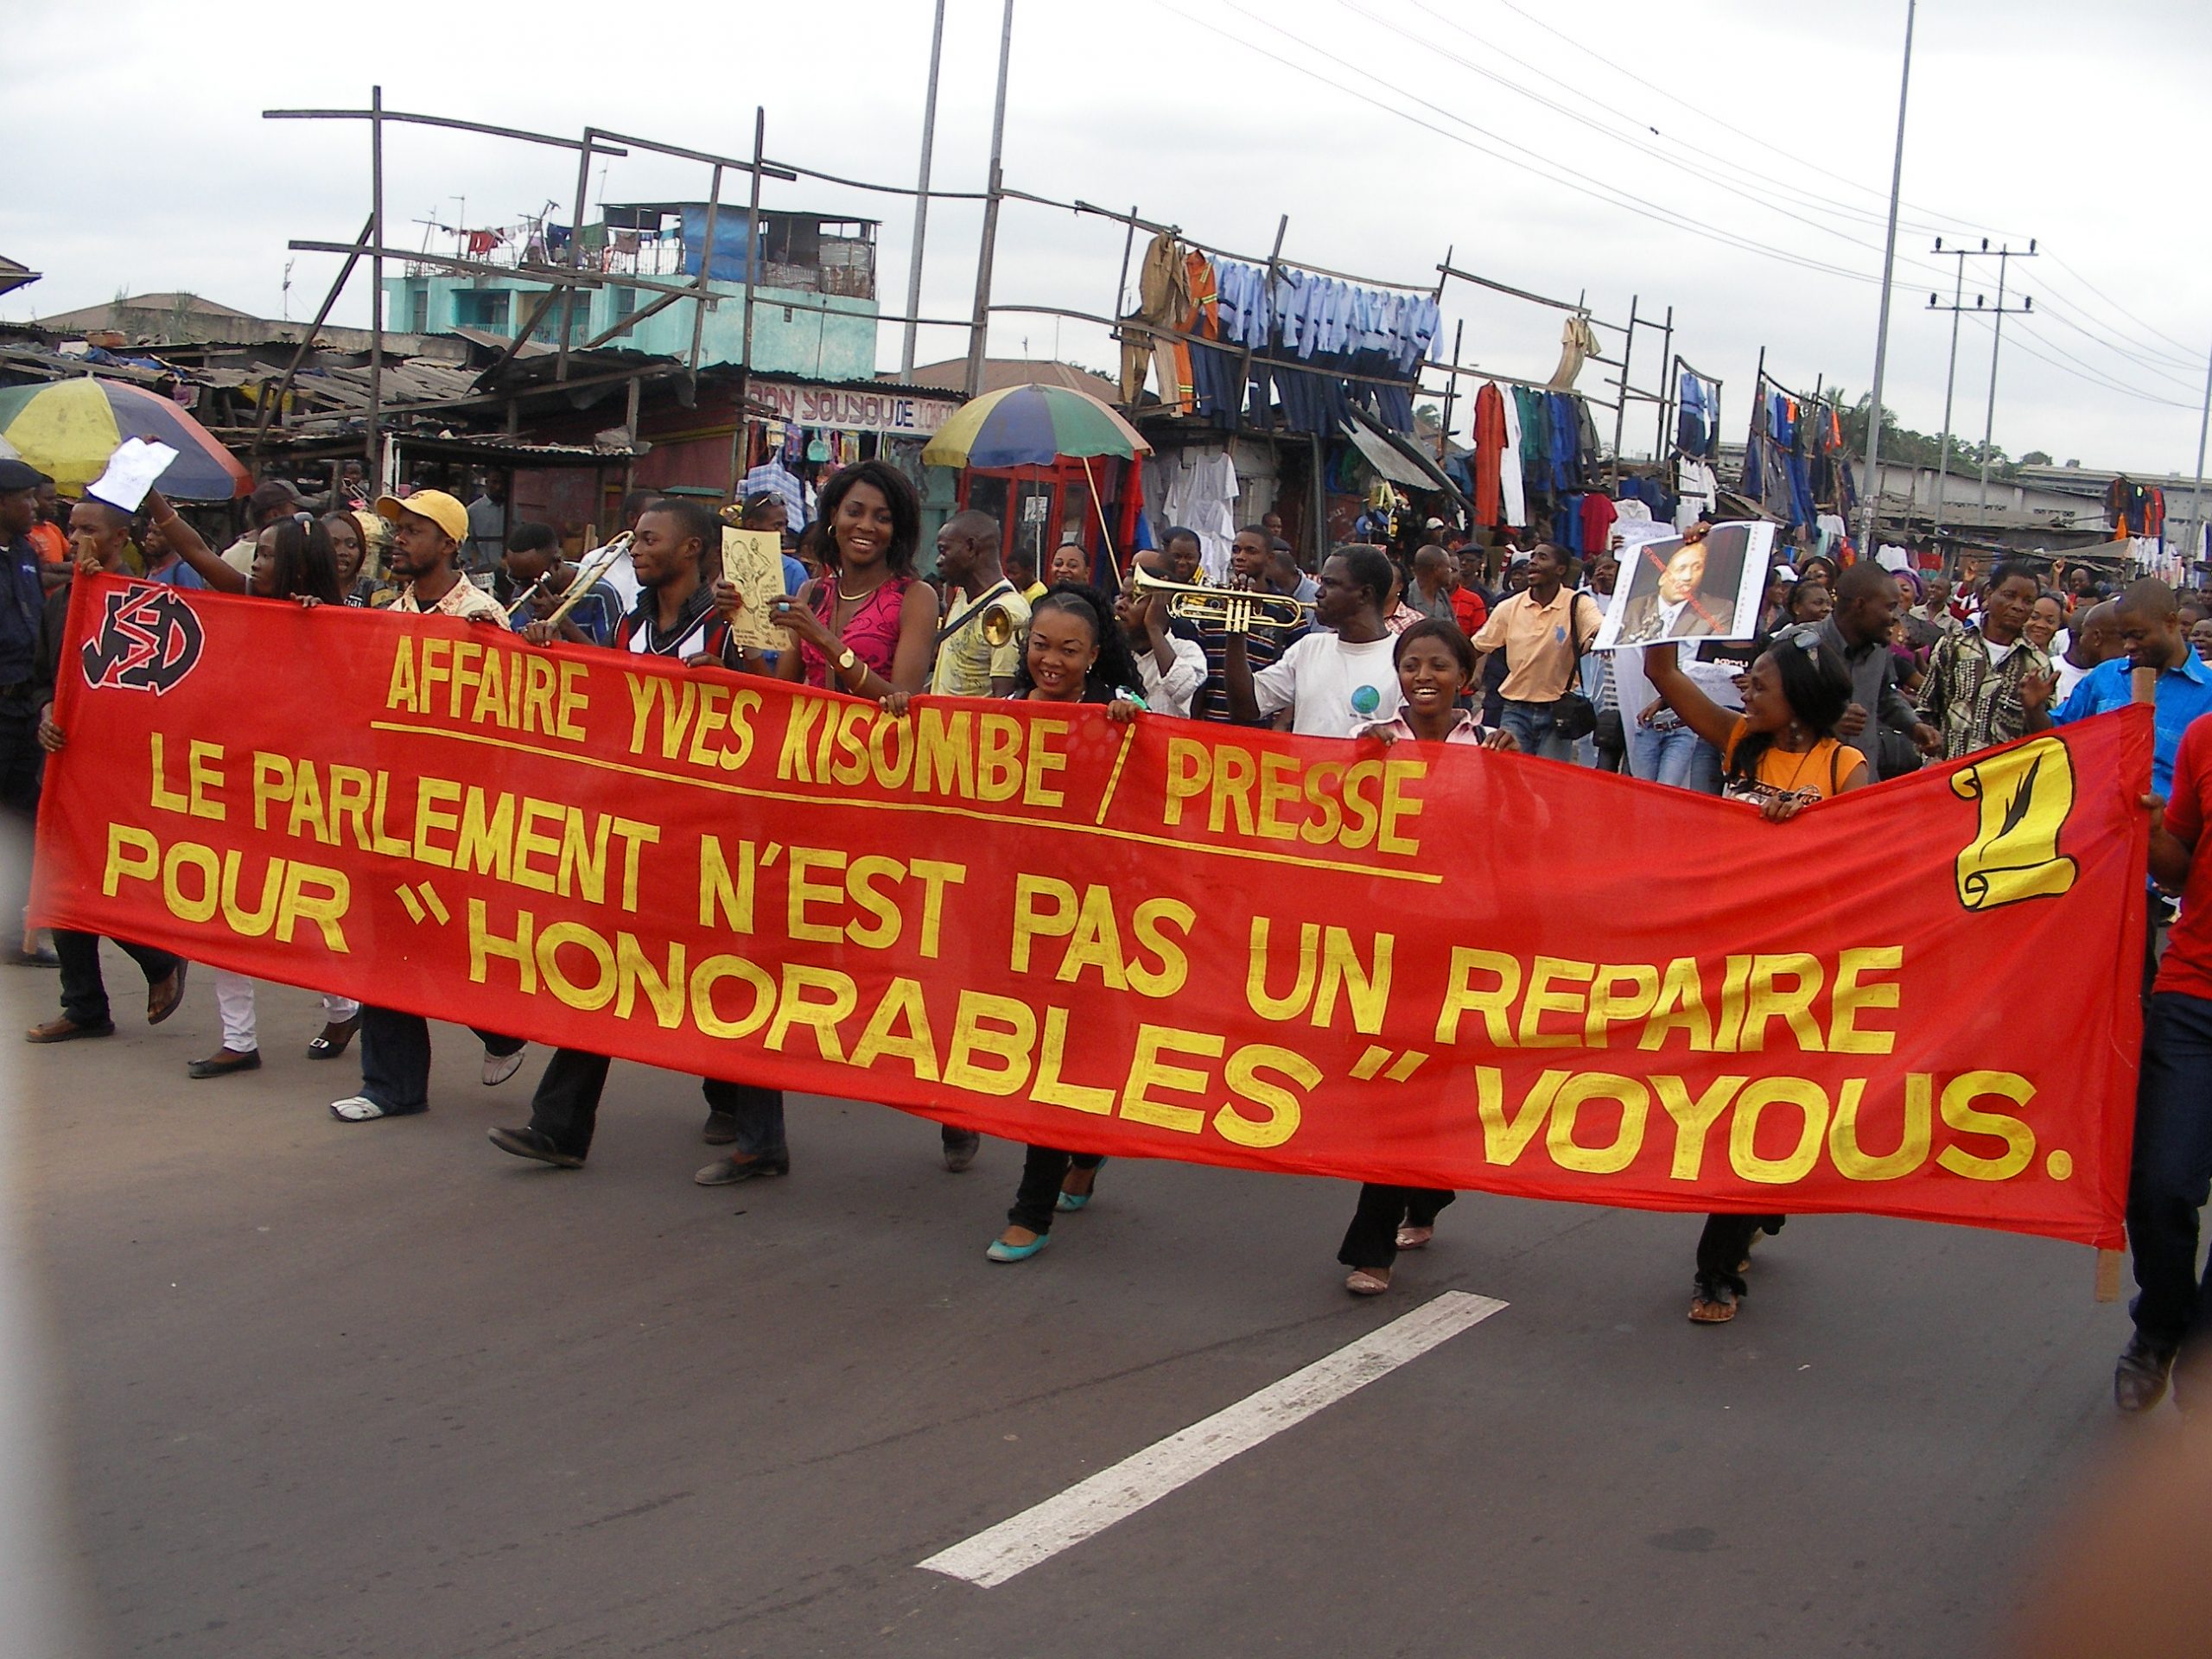 Marche de protestation des journalistes contre le député Yves KISOMBE